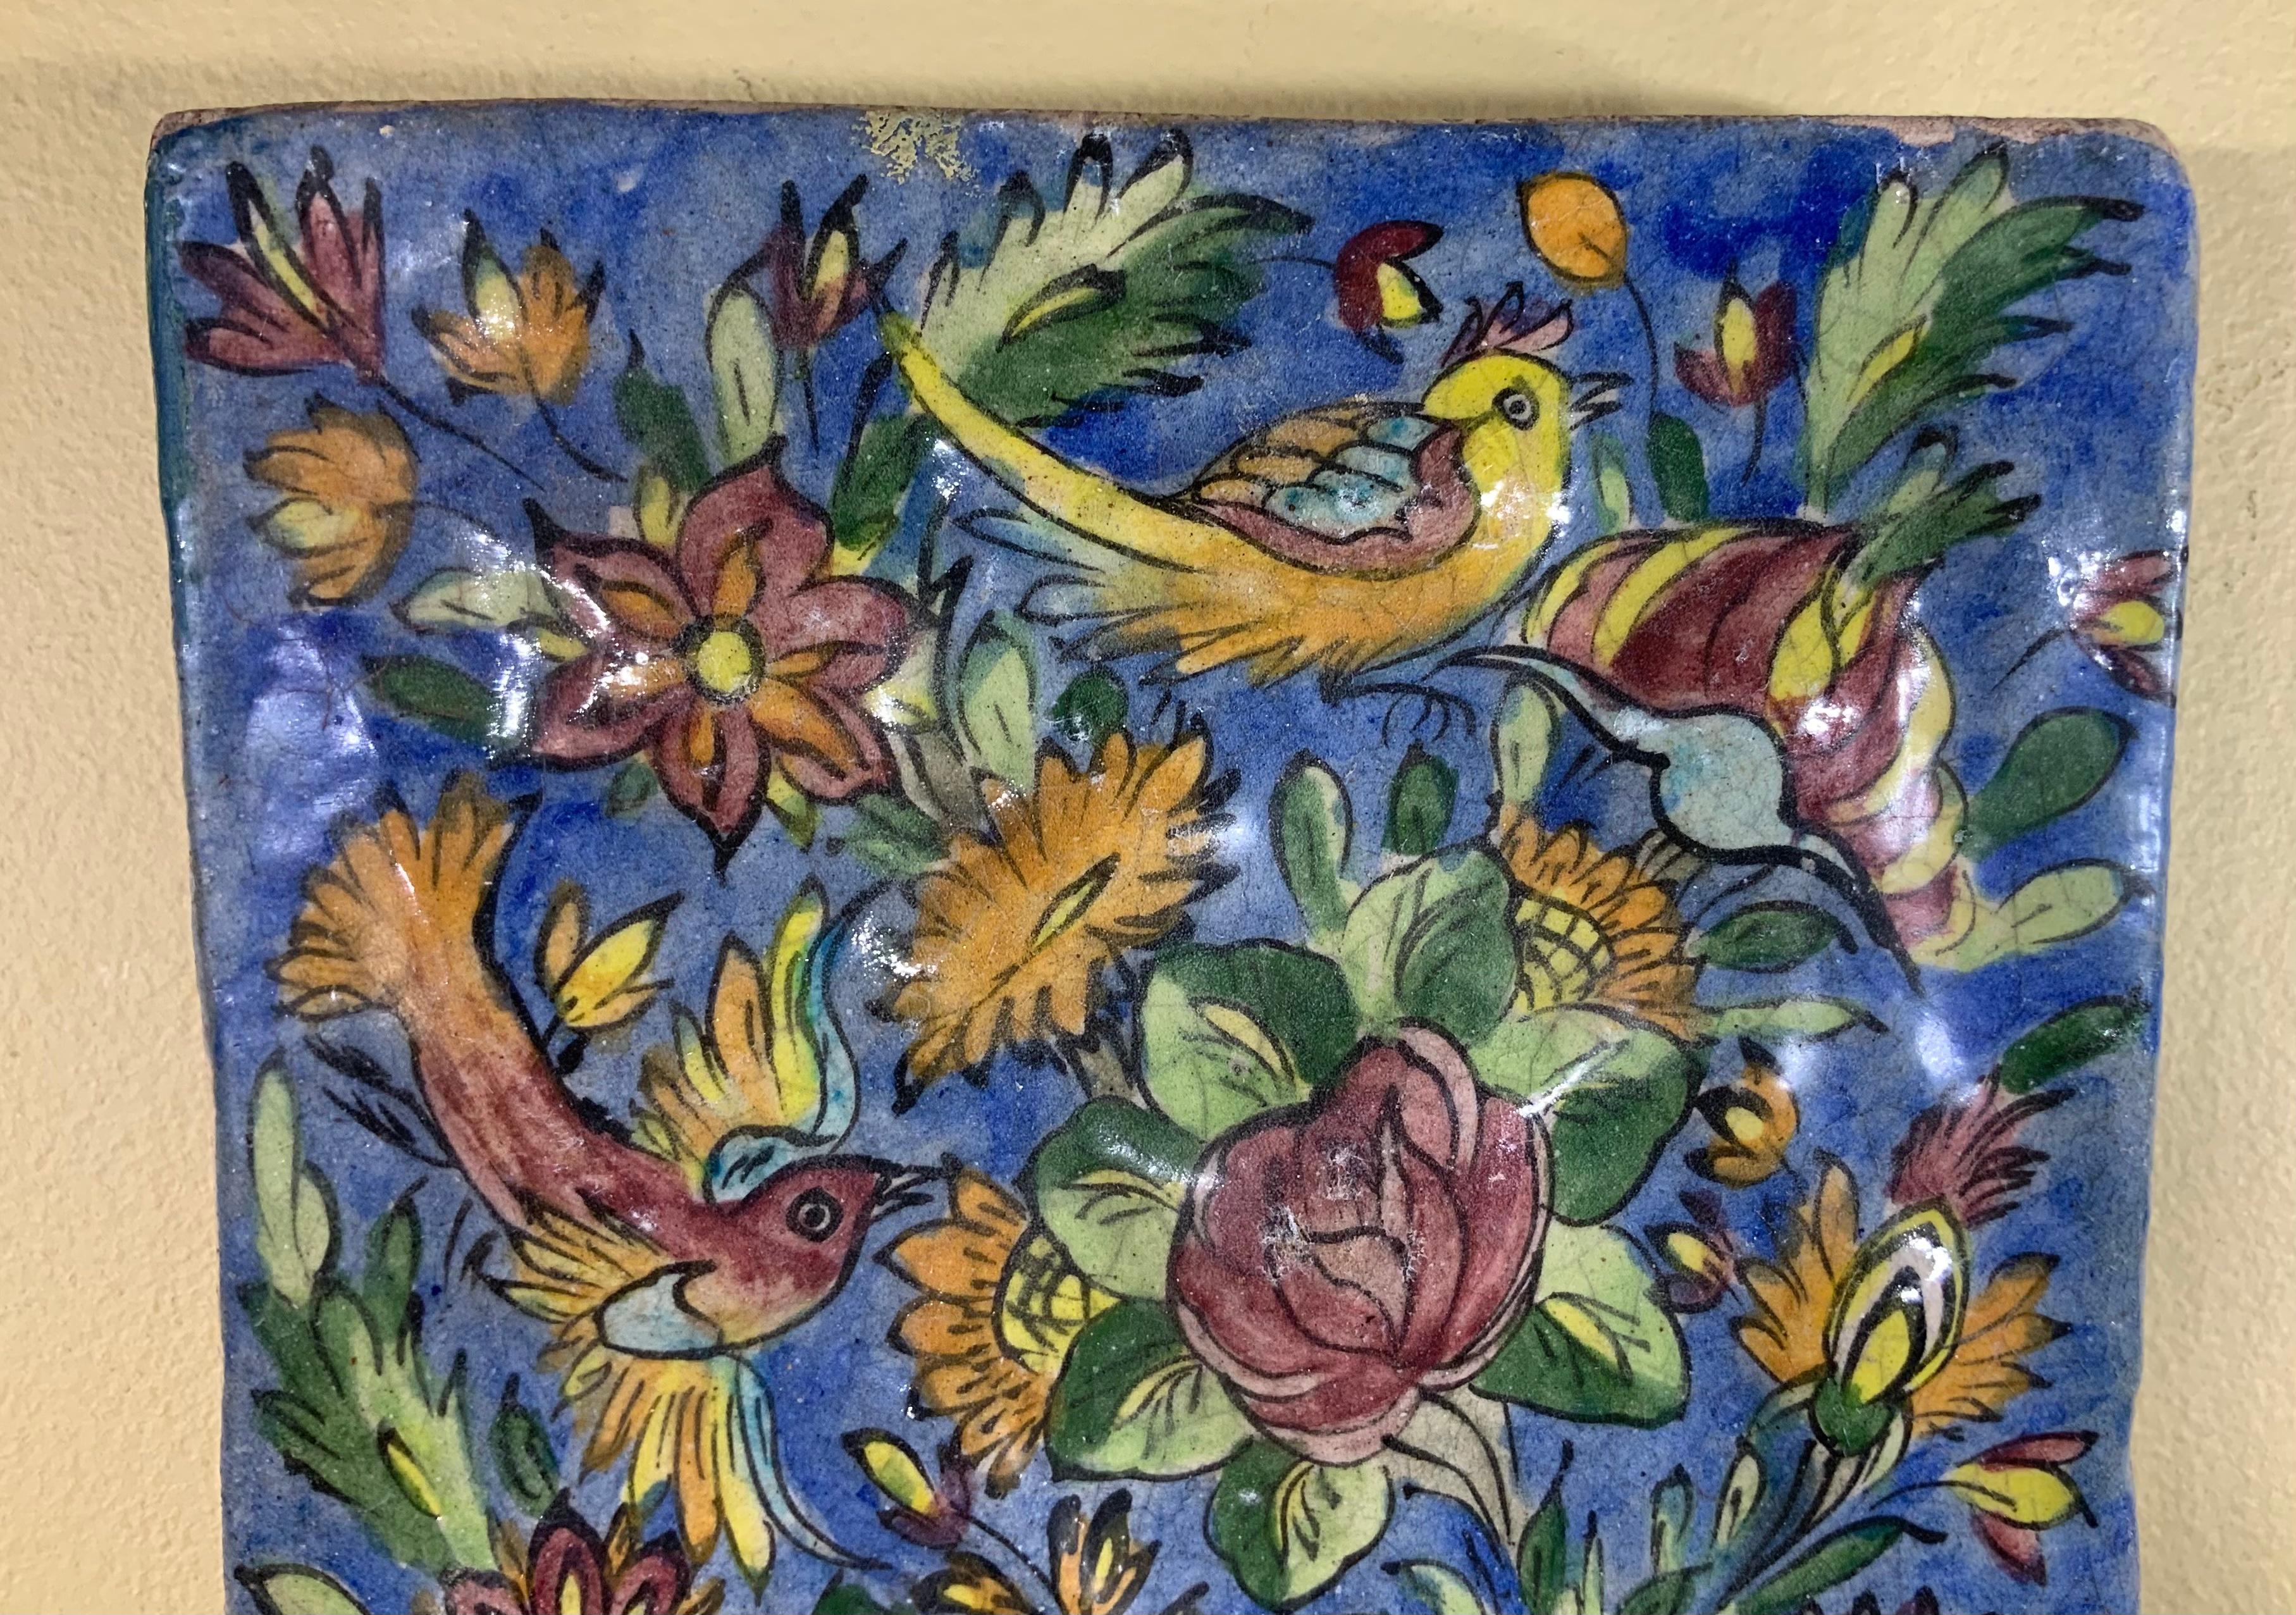 Außergewöhnliche Fliese alle handbemalt und glasiert mit schönen Landschaft der Vögel fliegen zwischen bunten Reben und Blumen auf einem blauen Hintergrund. Kann an die Wand gehängt werden.
Großartiges Kunstobjekt für die Wandgestaltung.

 